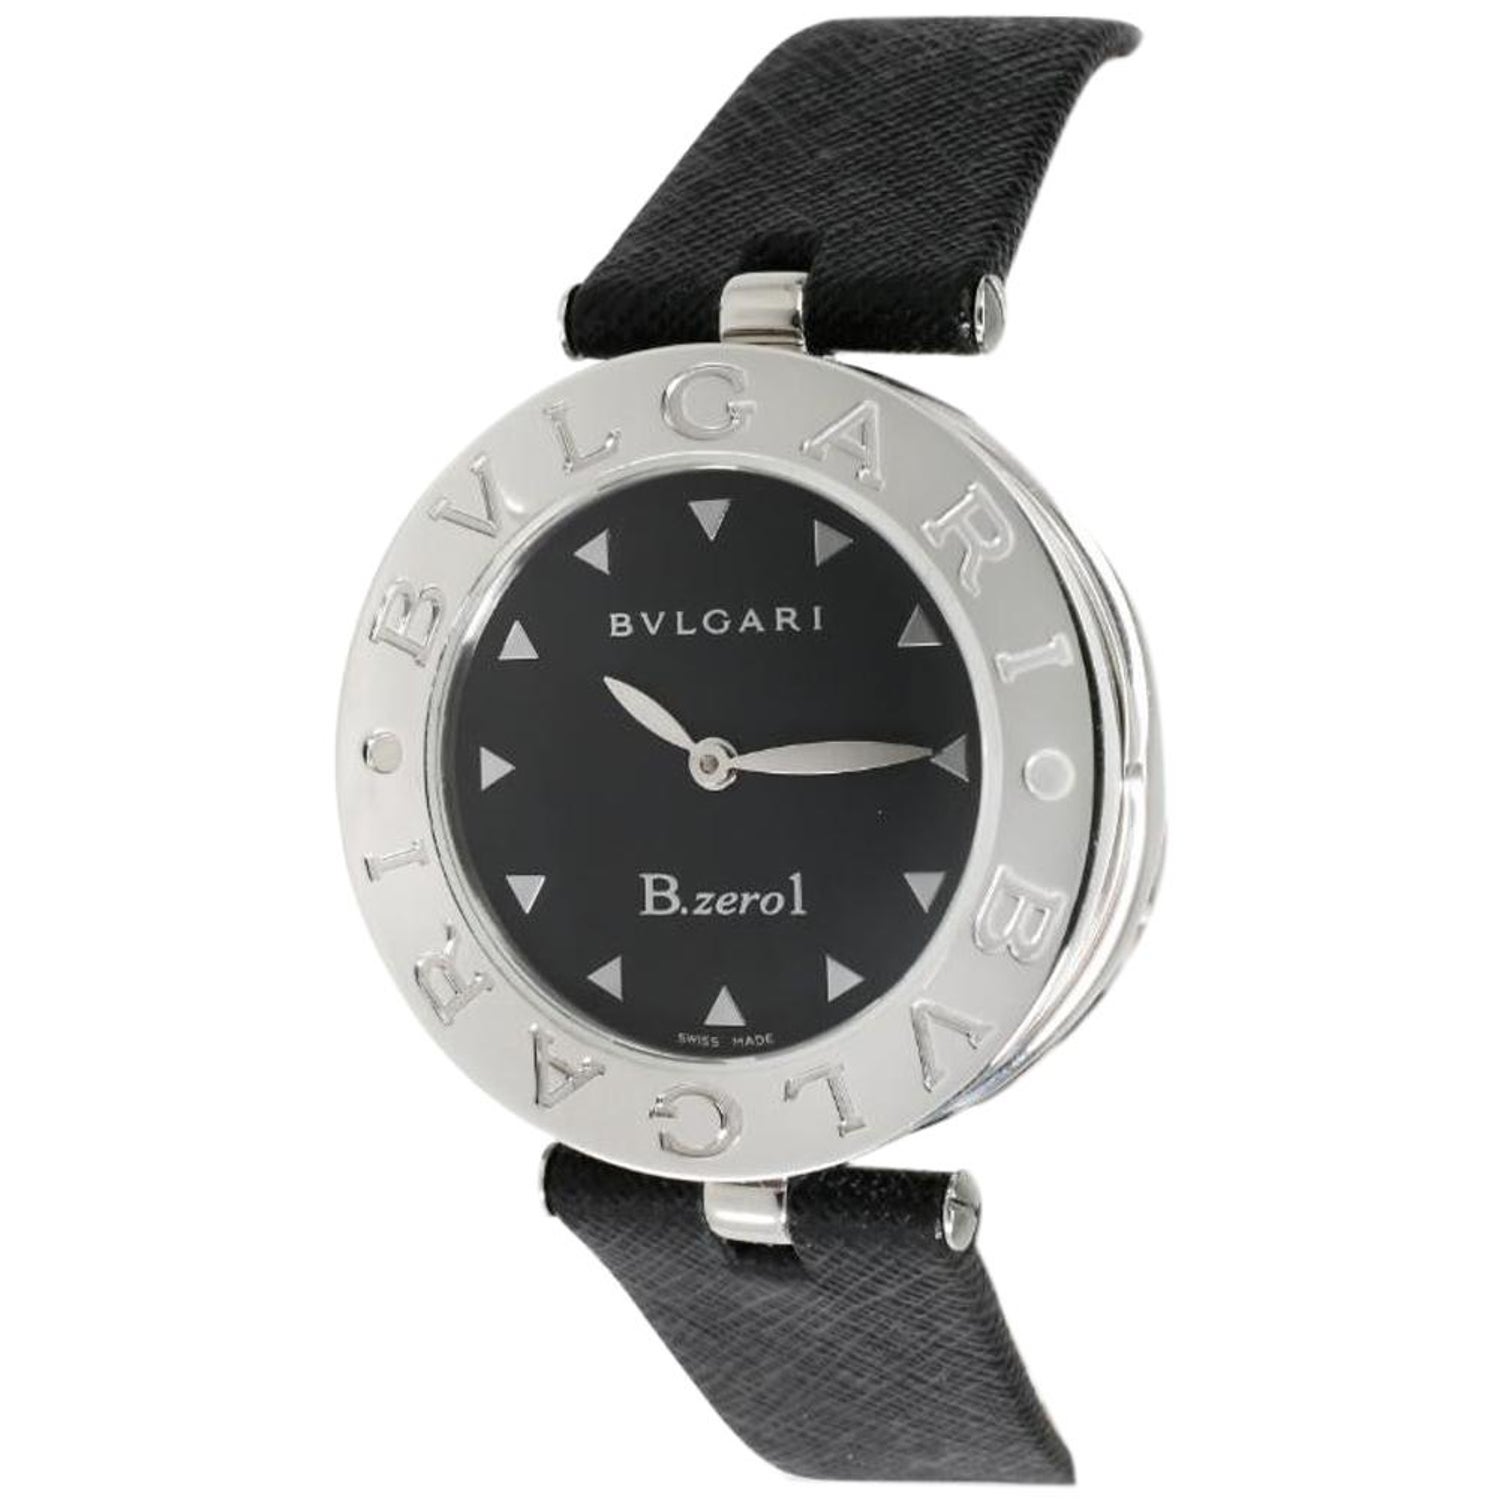 Bvlgari B Zero Watch - 3 For Sale on 1stDibs | bvlgari b zero1 watch,  bvlgari b zero watch price, bulgari b zero watch